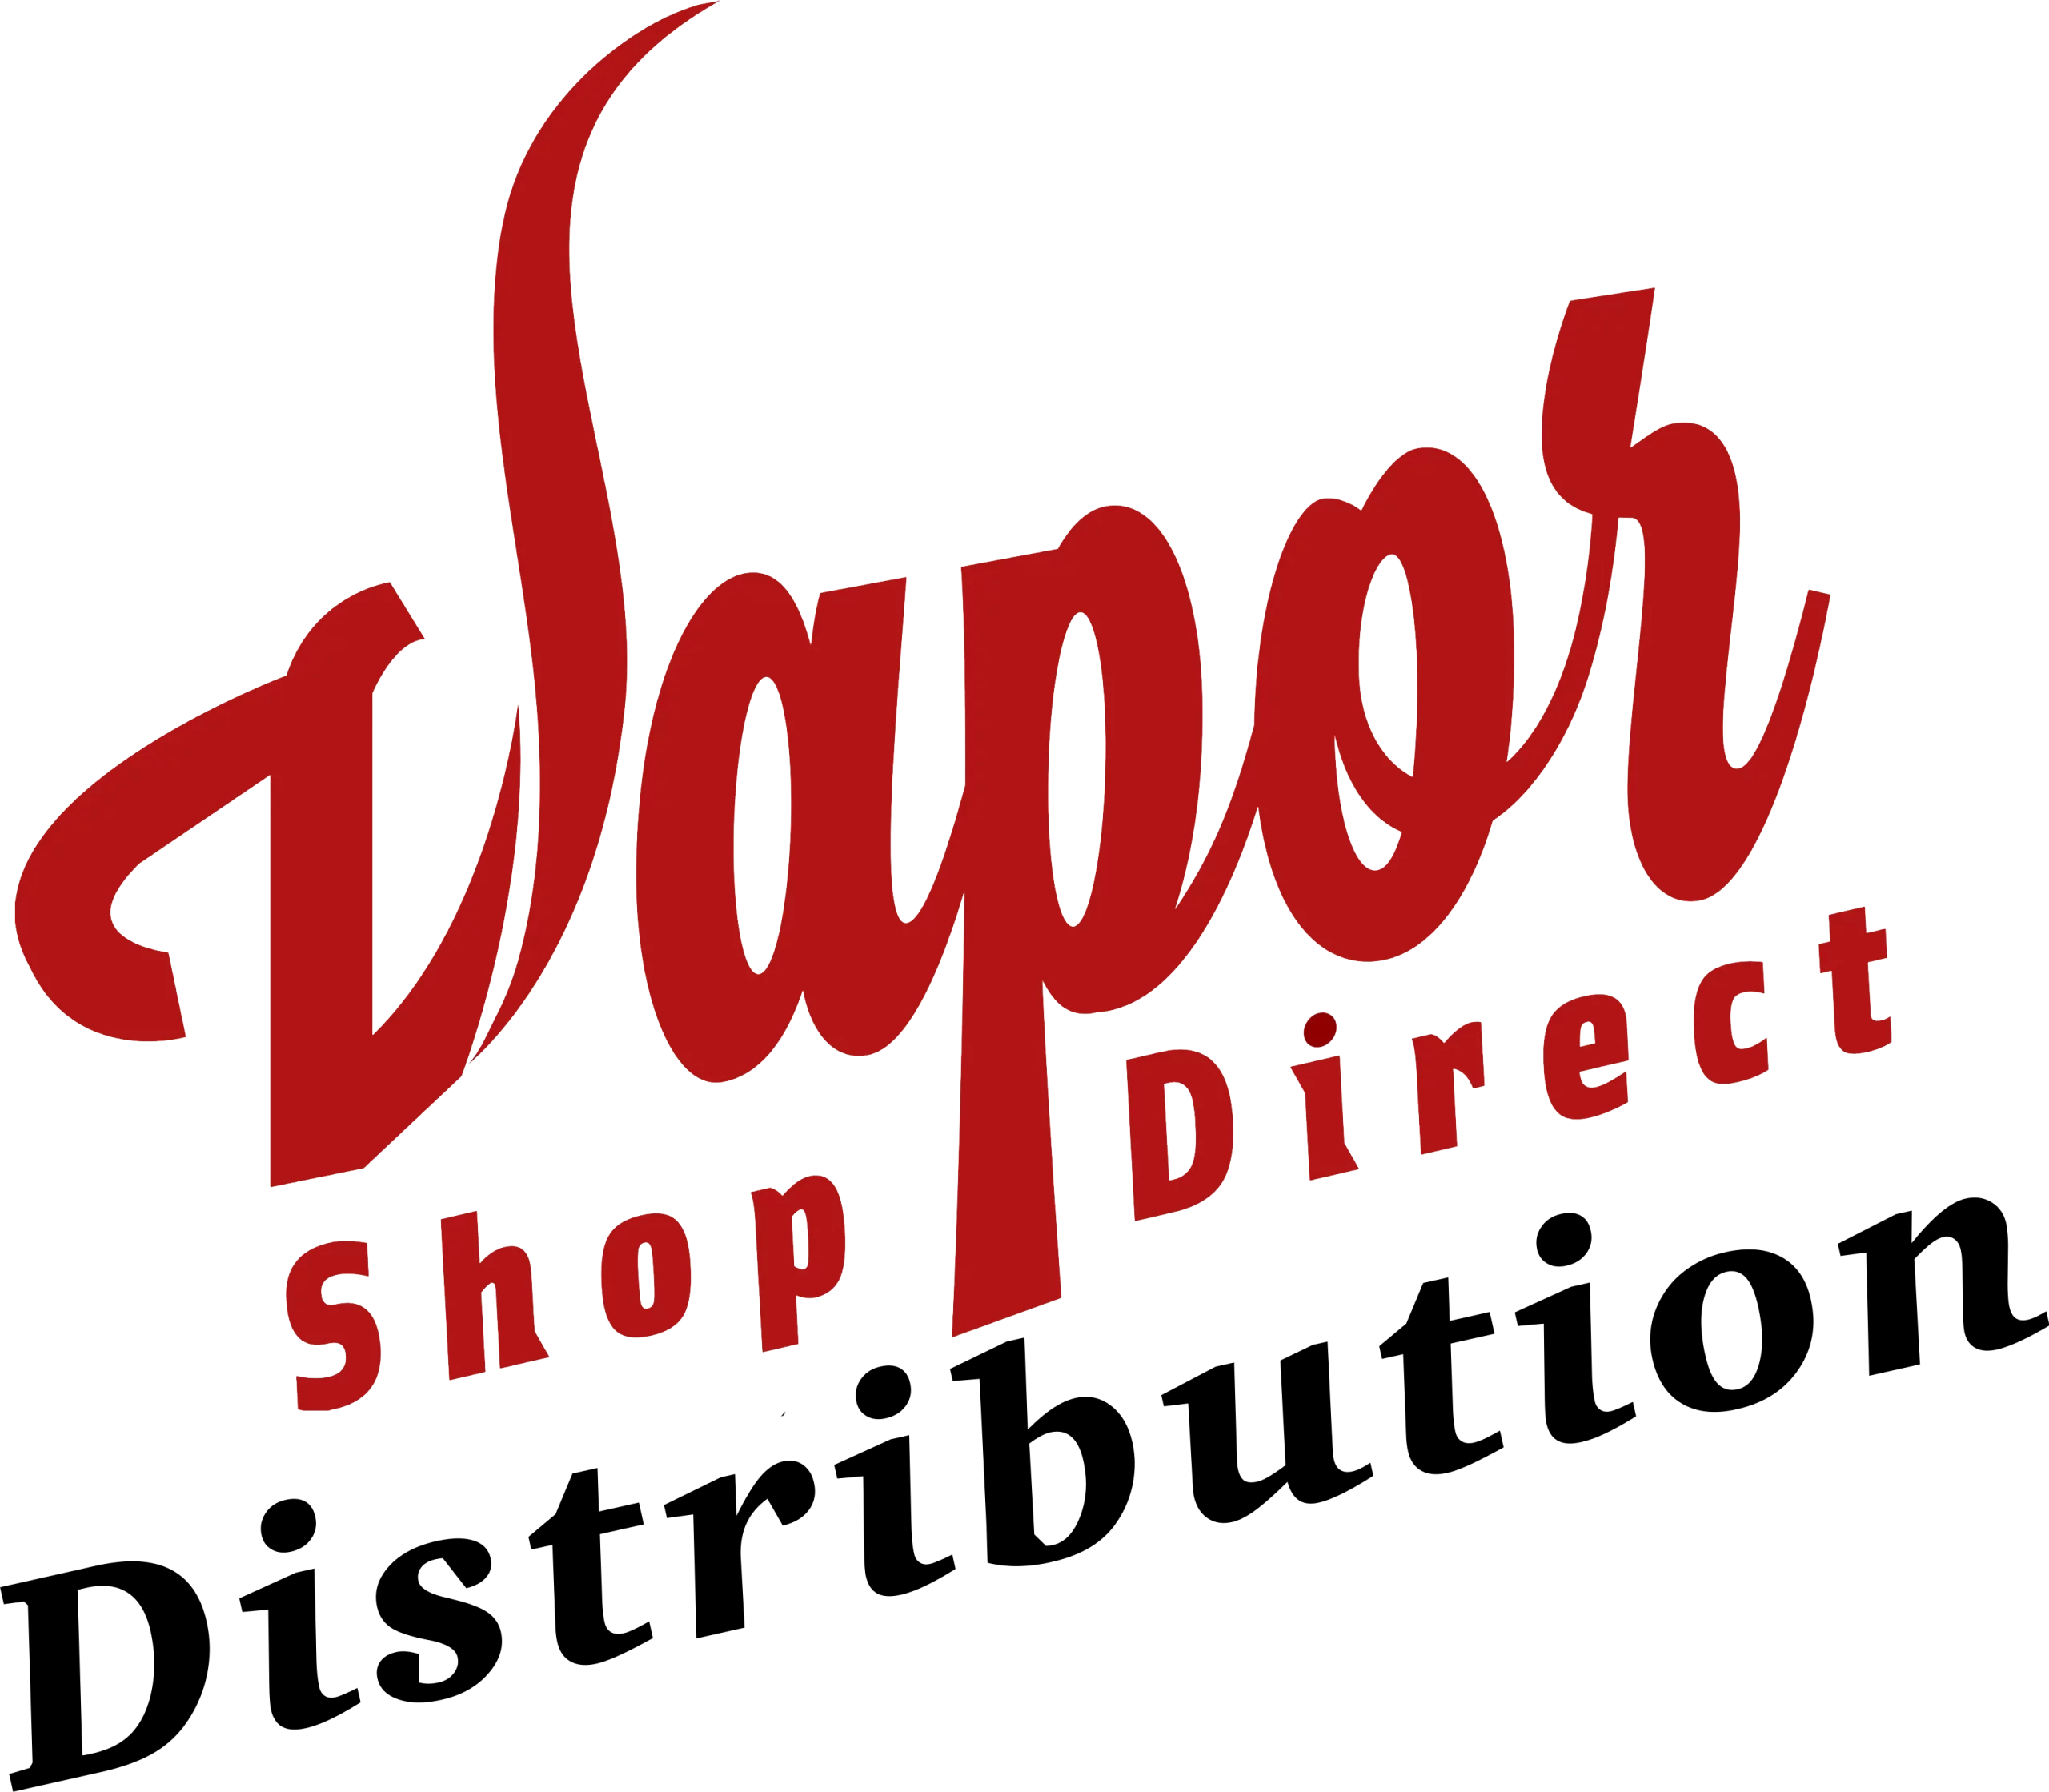 Vapor Shop Direct ロゴ 019cbe2e f280 4ef7 a9a0 06e3e9703cfc 縮尺